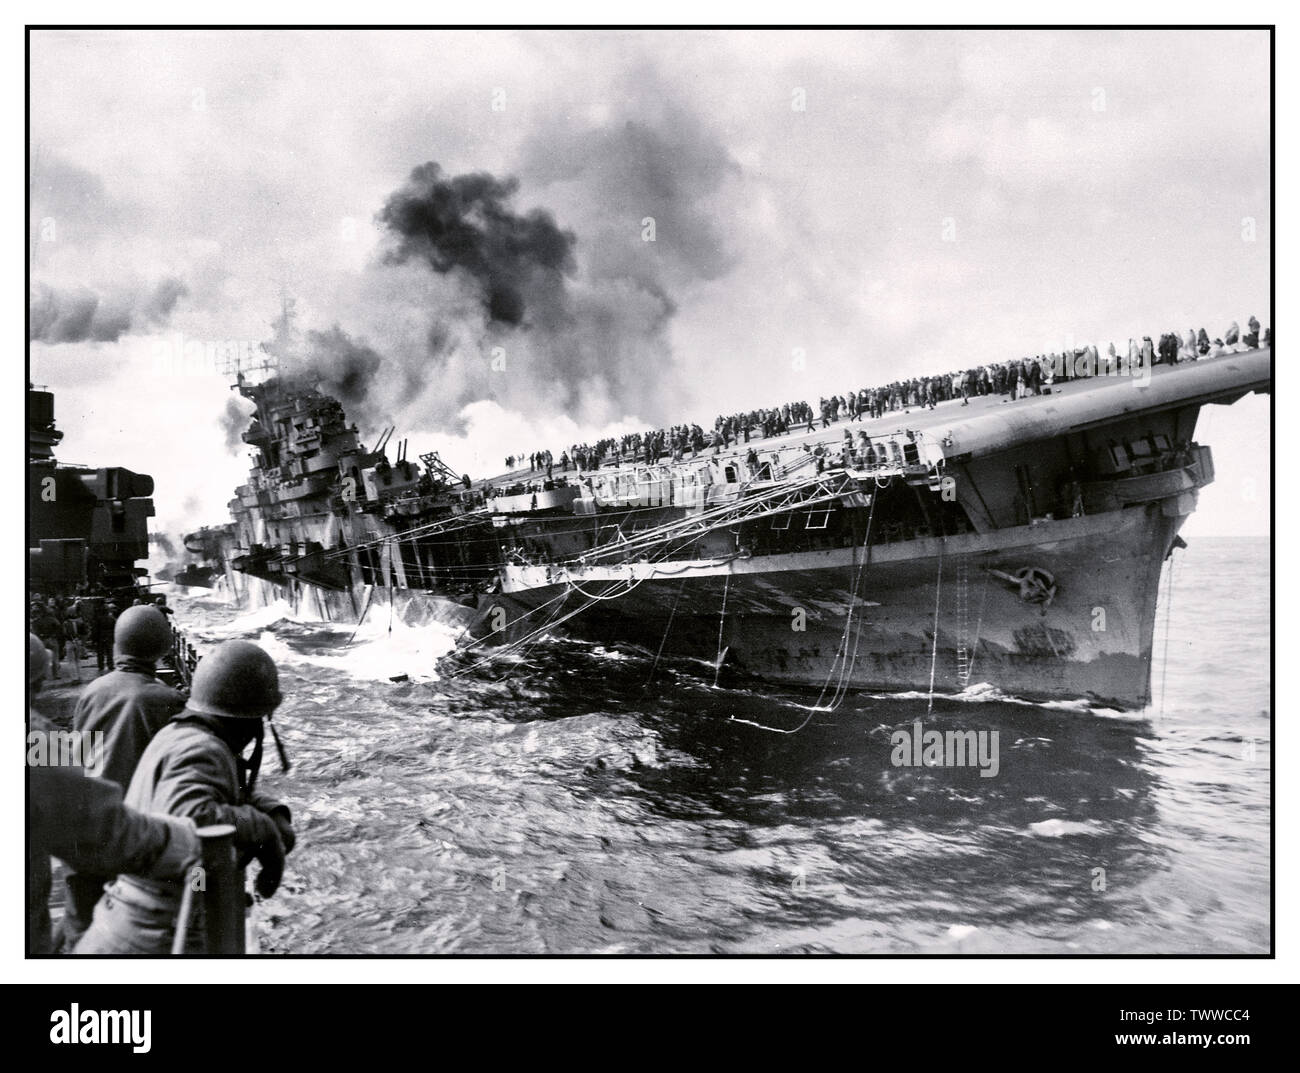 WW2 Bild der Flugzeugträger USS Franklin (CV-13) im Pazifik während des Zweiten Weltkriegs angegriffen, 19. März 1945. Von PHC Albert Farren aus der Kreuzer USS Santa Fe (CL-60), die neben einer Unterstützung bei der Brandbekämpfung und Rettung Arbeit fotografiert wurde. Der Träger ist auf Feuer und Auflistung, nachdem Sie von einem japanischen Luftangriff während vor der Küste Japans - die Mannschaft ist eindeutig auf Flight Deck gesehen, geschlagen wurde. Nach dem Angriff des Schiffes tot im Wasser lag, nahm einen 13° Steuerbord Liste, alle Radio Communications verloren, und gebratenem unter der Hitze von umhüllenden Brände. Stockfoto